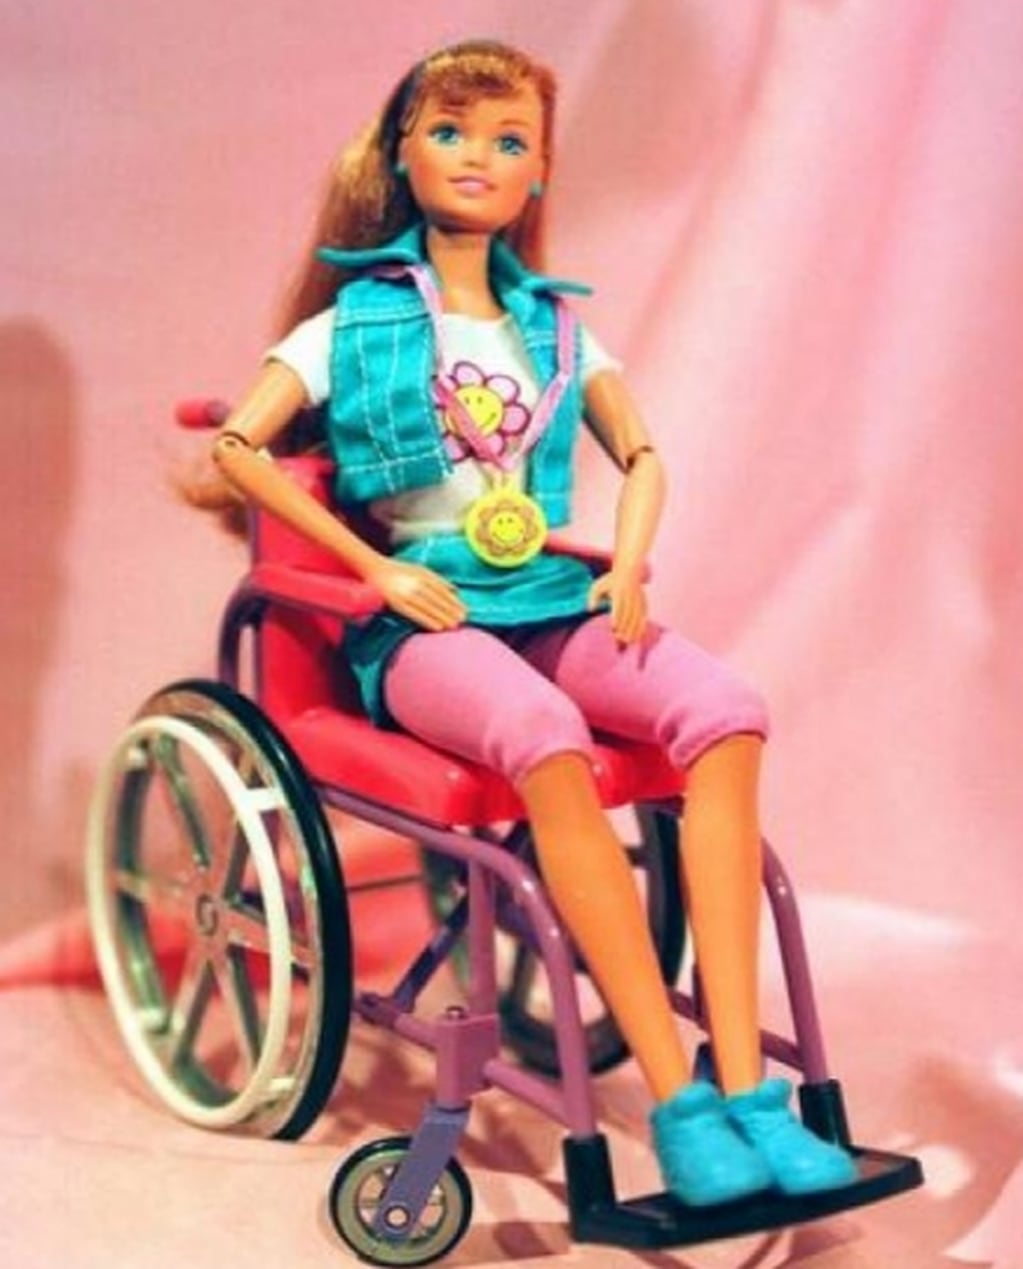 En mayo de 1997, Mattel presentó en silla de ruedas a Barbie. Sin embargo esta creación fue criticada porque la silla de ruedas no entraba por la puerta de la casa de Barbie.